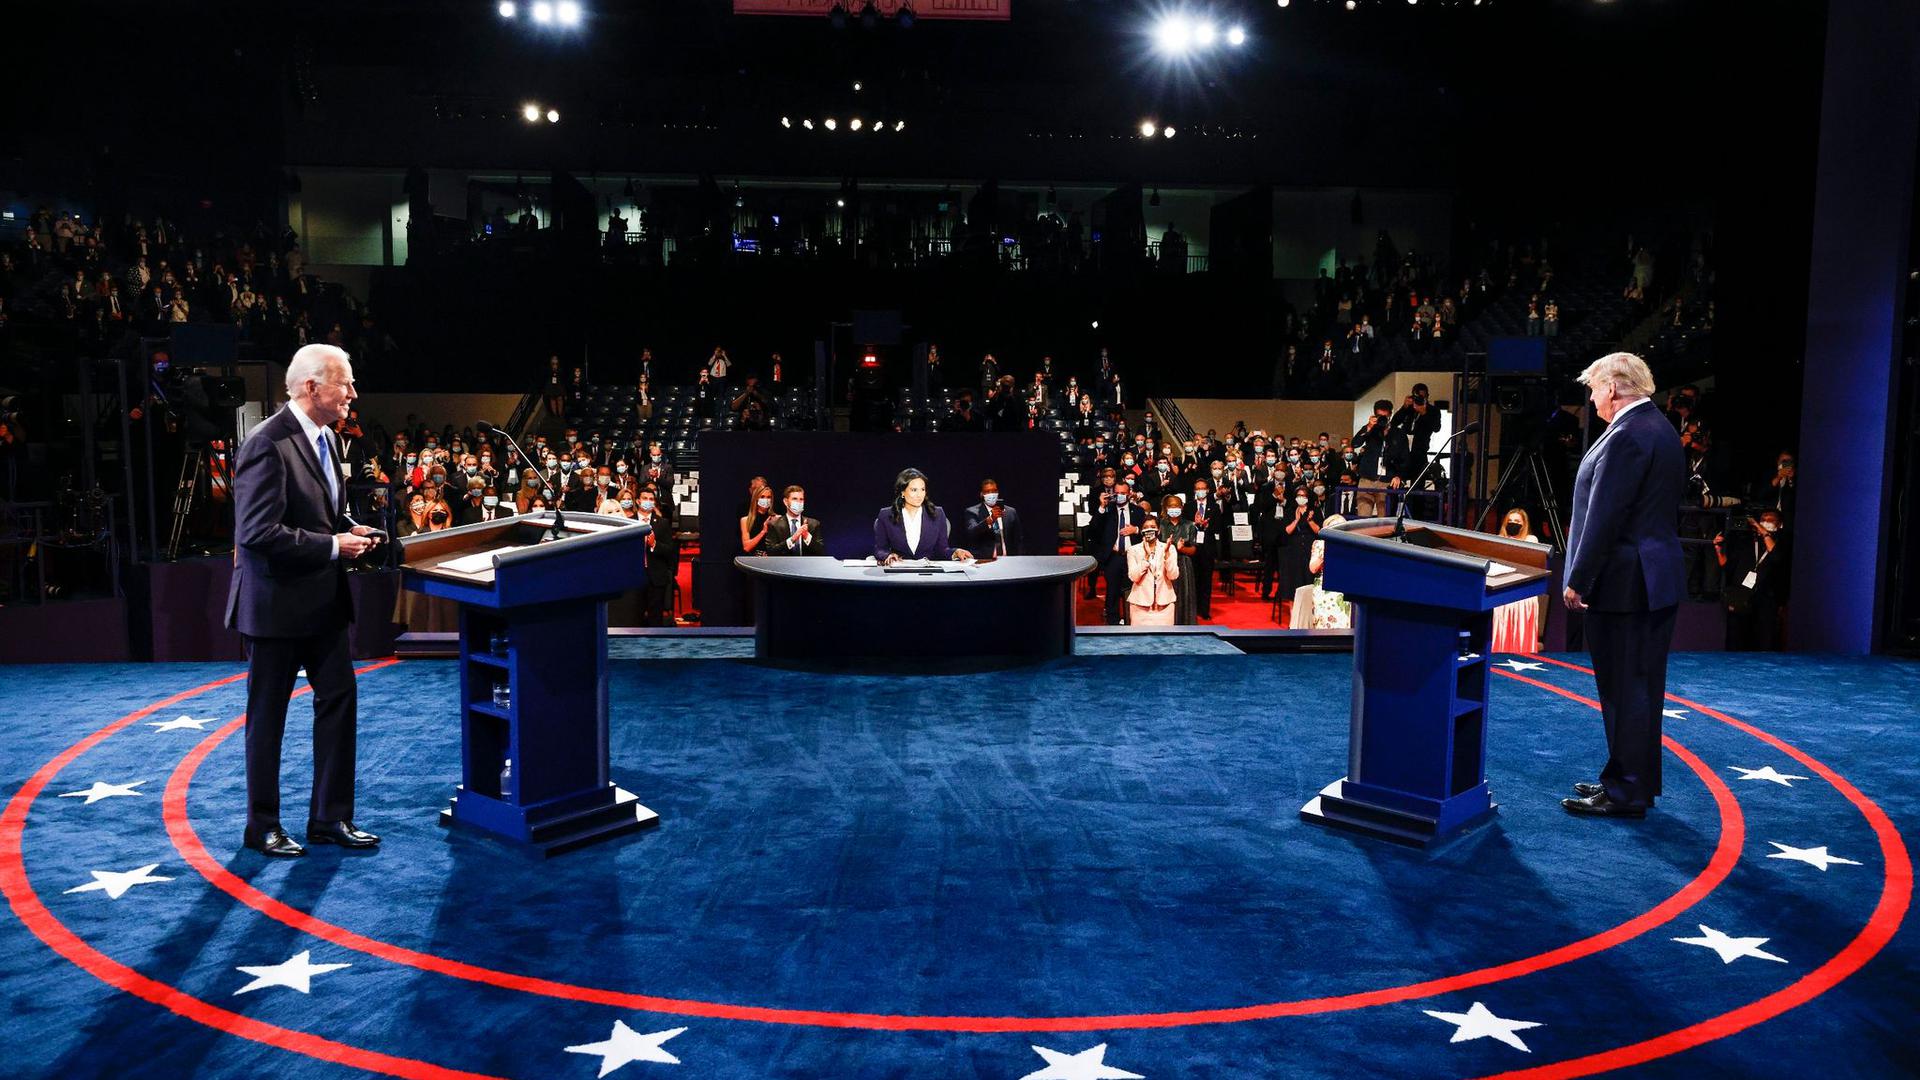 Donald Trump (r.) und Joe Biden beim letzten TV-Duell in der Belmont University. In der Mitte sitzt die Moderatorin Kristen Welker von NBC News.